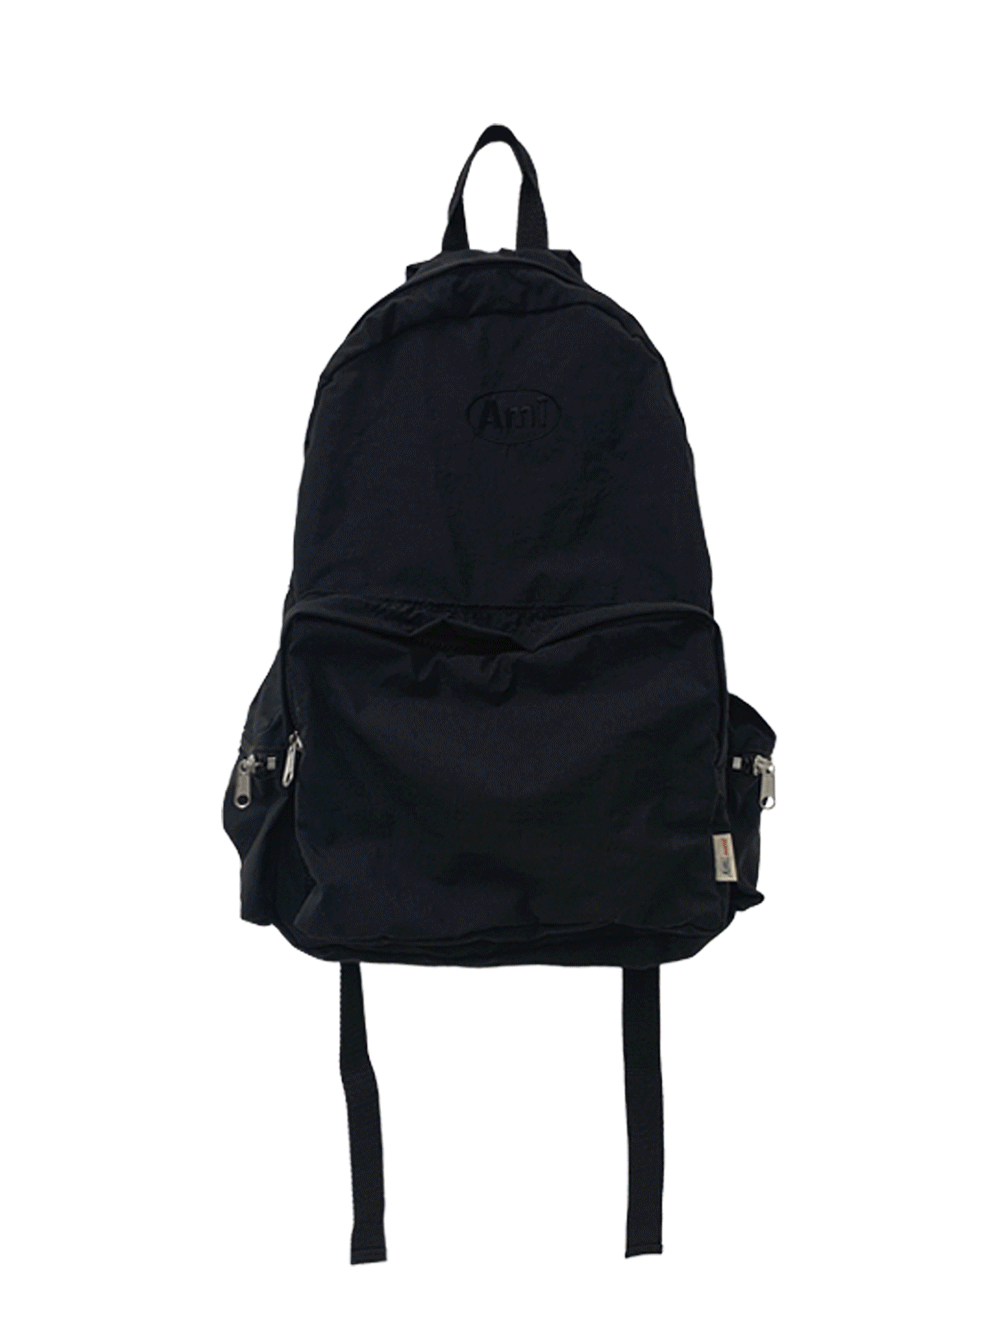 [2차 오픈] camper backpack - bag